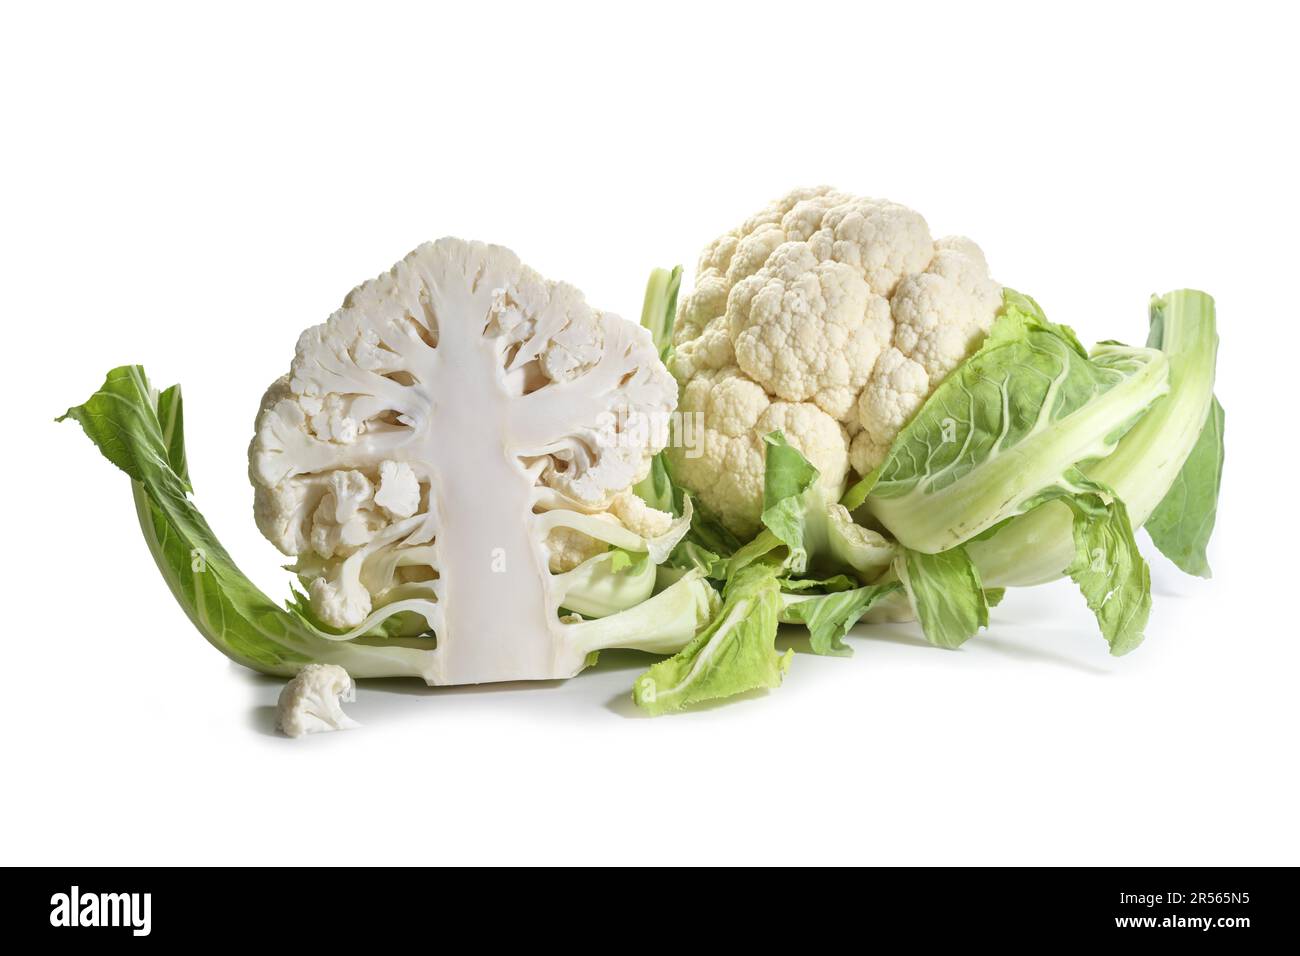 Cavolfiore crudo, verdure intere e dimezzate isolate su sfondo bianco, ingrediente per una sana cucina vegetariana, spazio copia, focus selezionato Foto Stock